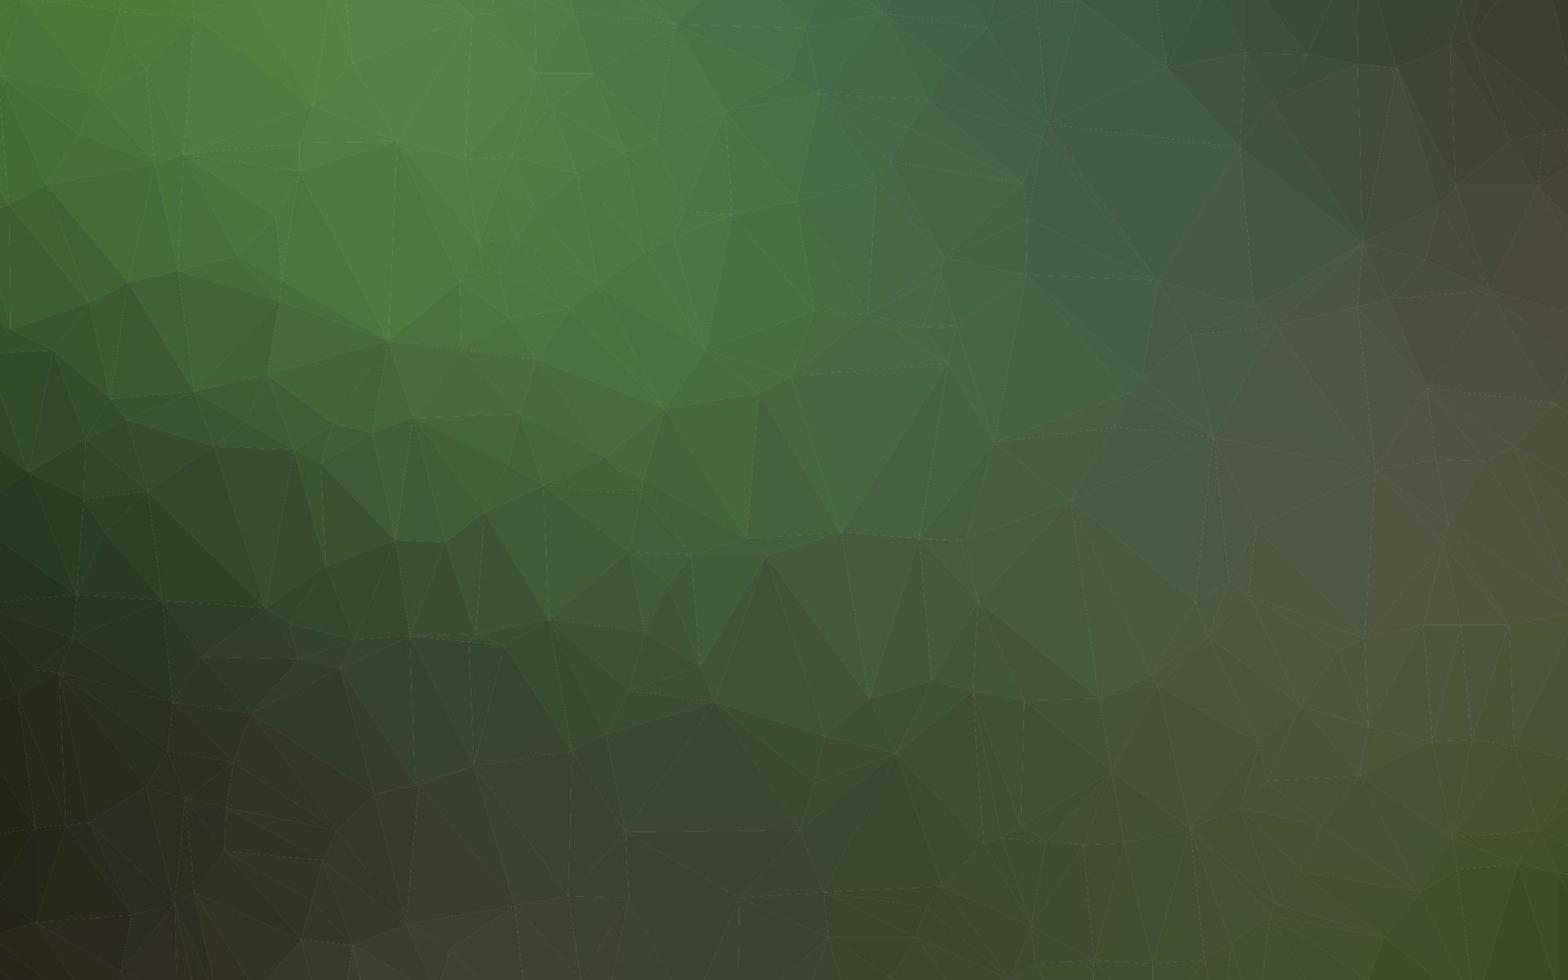 texture triangolo sfocato vettoriale verde chiaro.